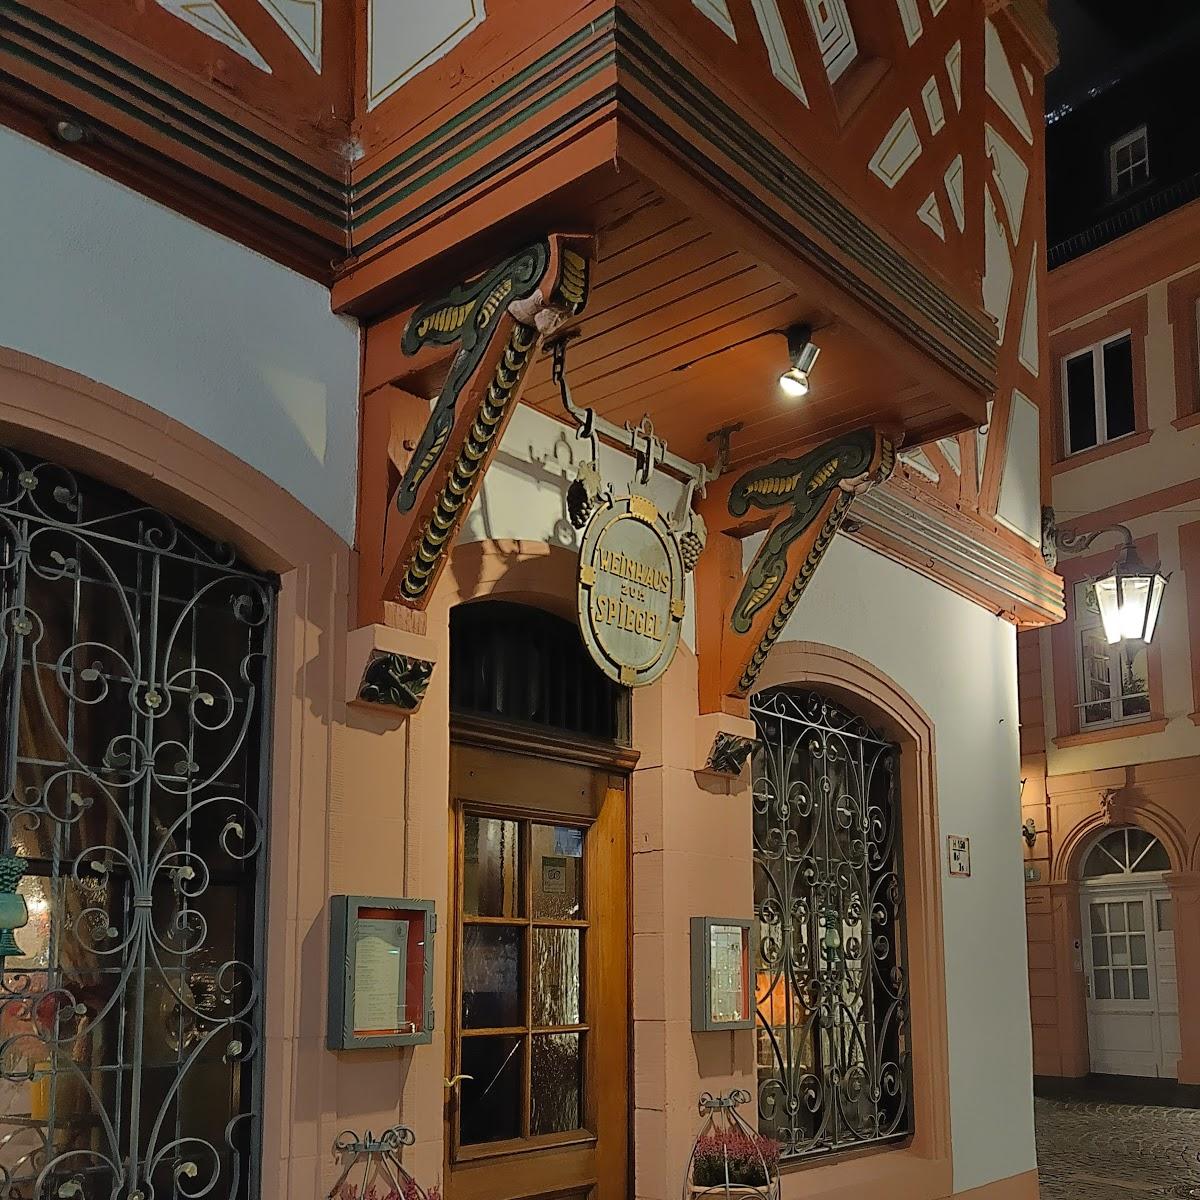 Restaurant "Weinhaus Zum Spiegel" in Mainz